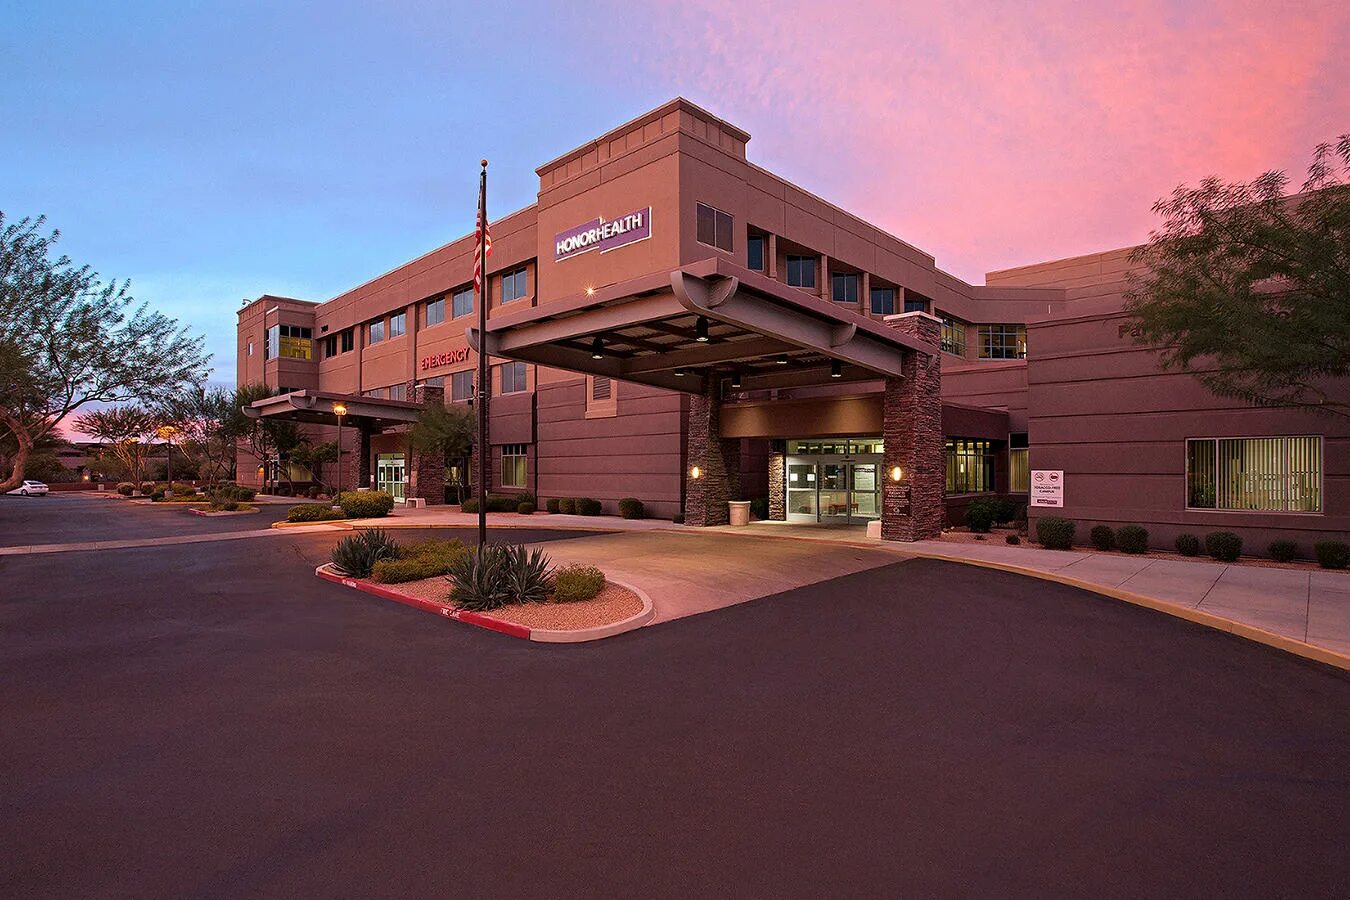 Америка госпиталь. Город Скоттсдейл, Марикопа-Каунти, штат Аризона. Больницы США Аризона. Здания Аризона США. Госпиталь США.